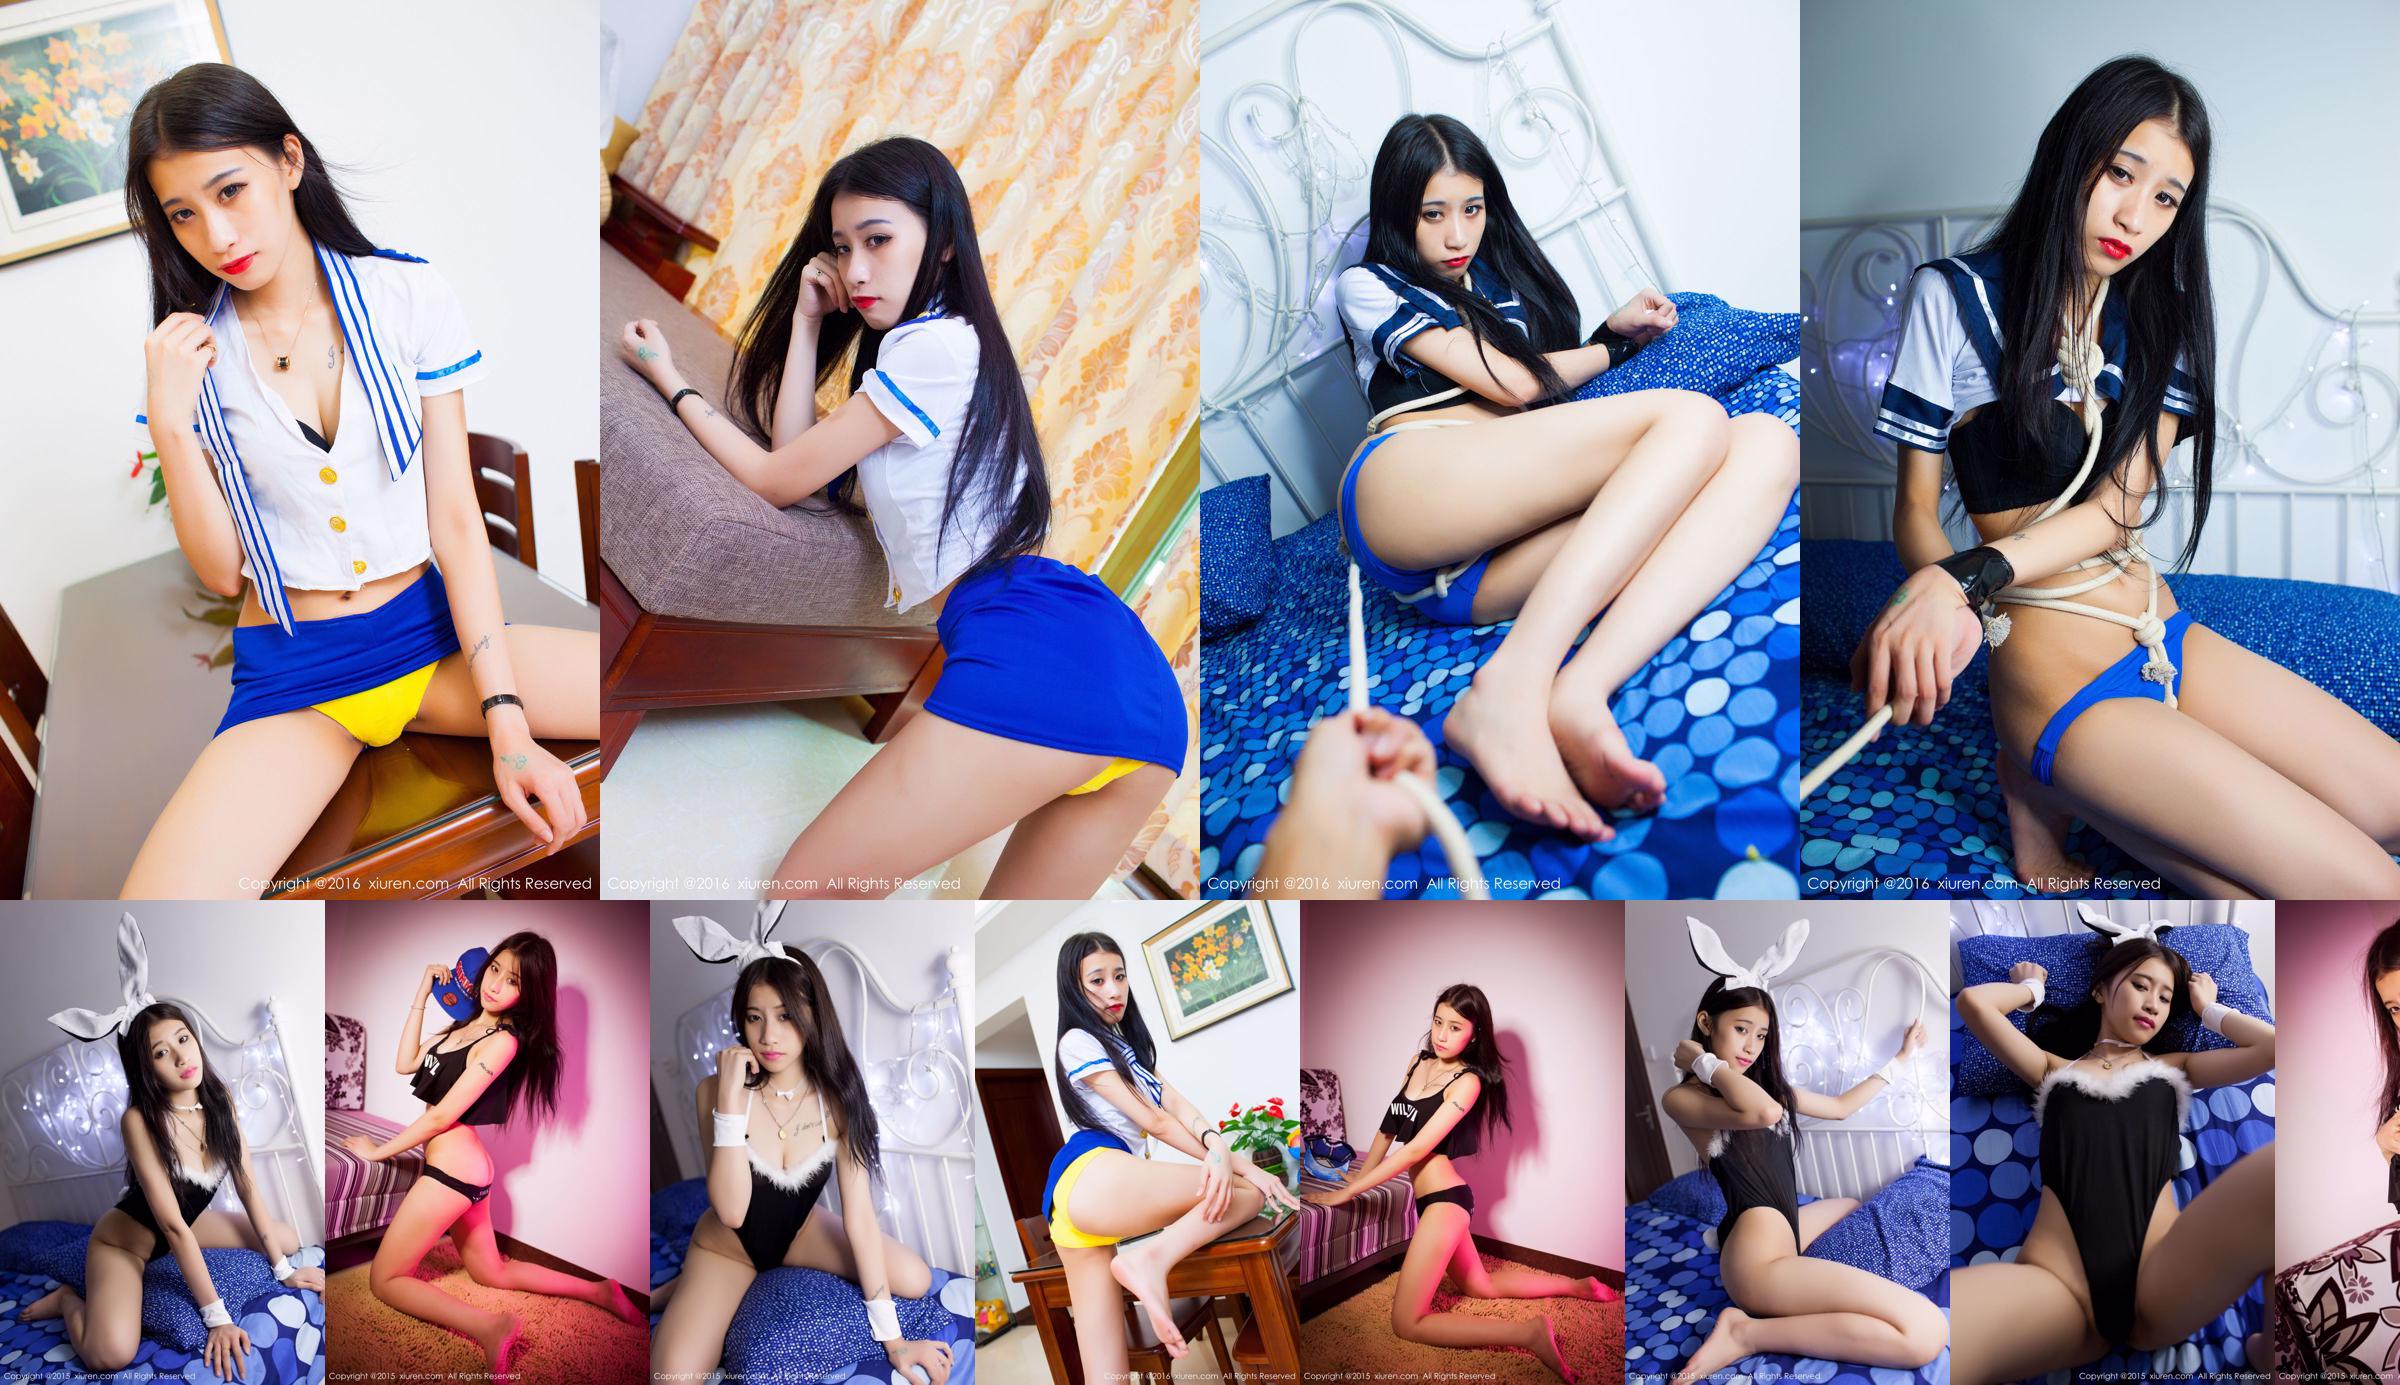 Huang Weiting Tina „Mundur stewardessy, seksowny pępek, czysty mundurek szkolny i seria pokus” [秀 人 网 XiuRen] nr 637 No.965860 Strona 1